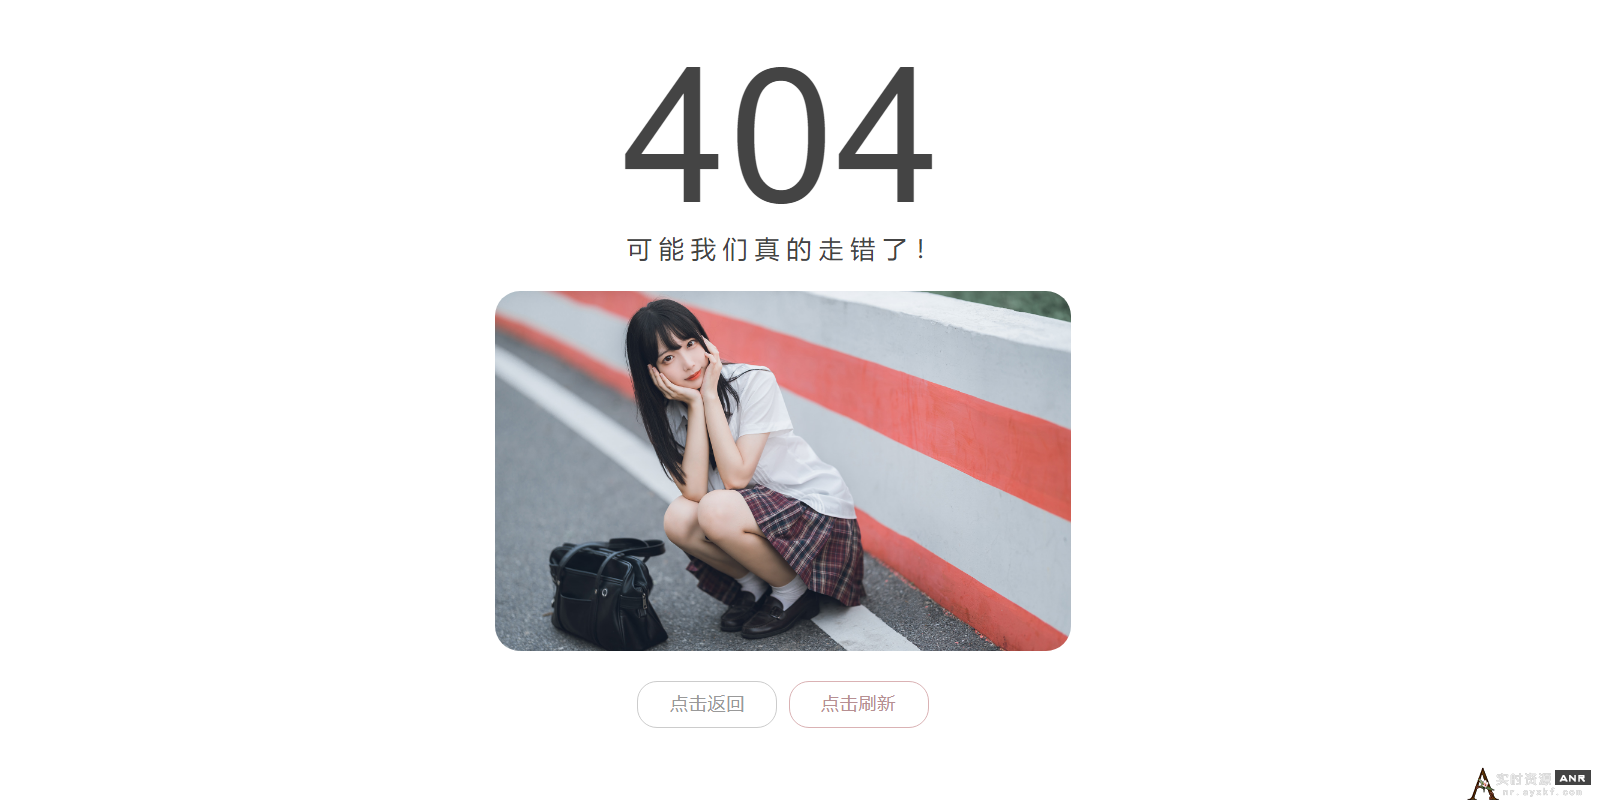 404错误代码页面 调用自动获取小姐姐图片